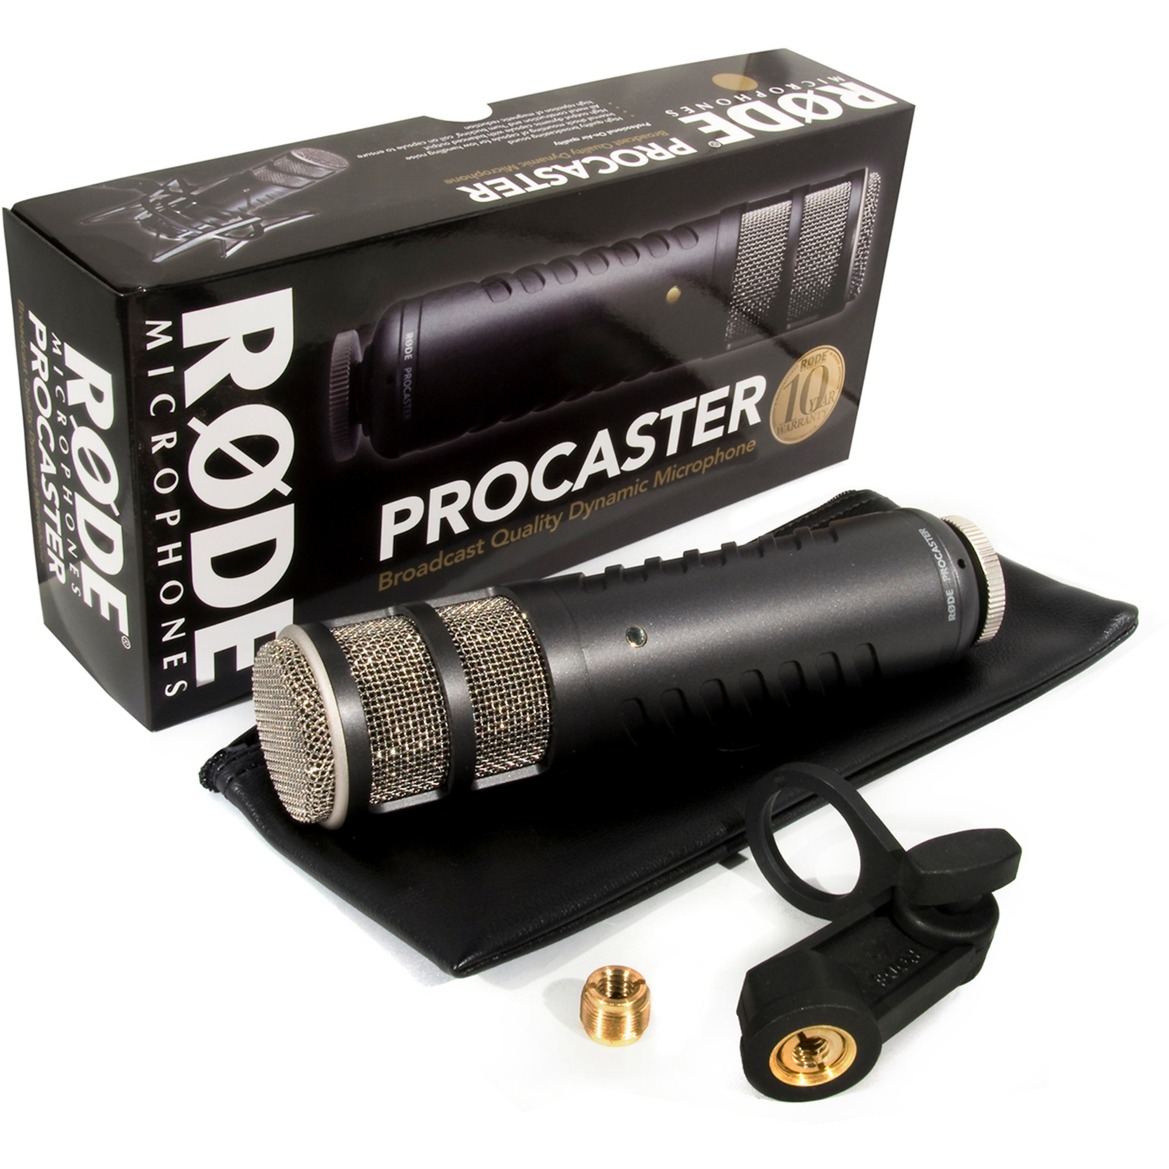 Image of Alternate - Procaster, Mikrofon online einkaufen bei Alternate